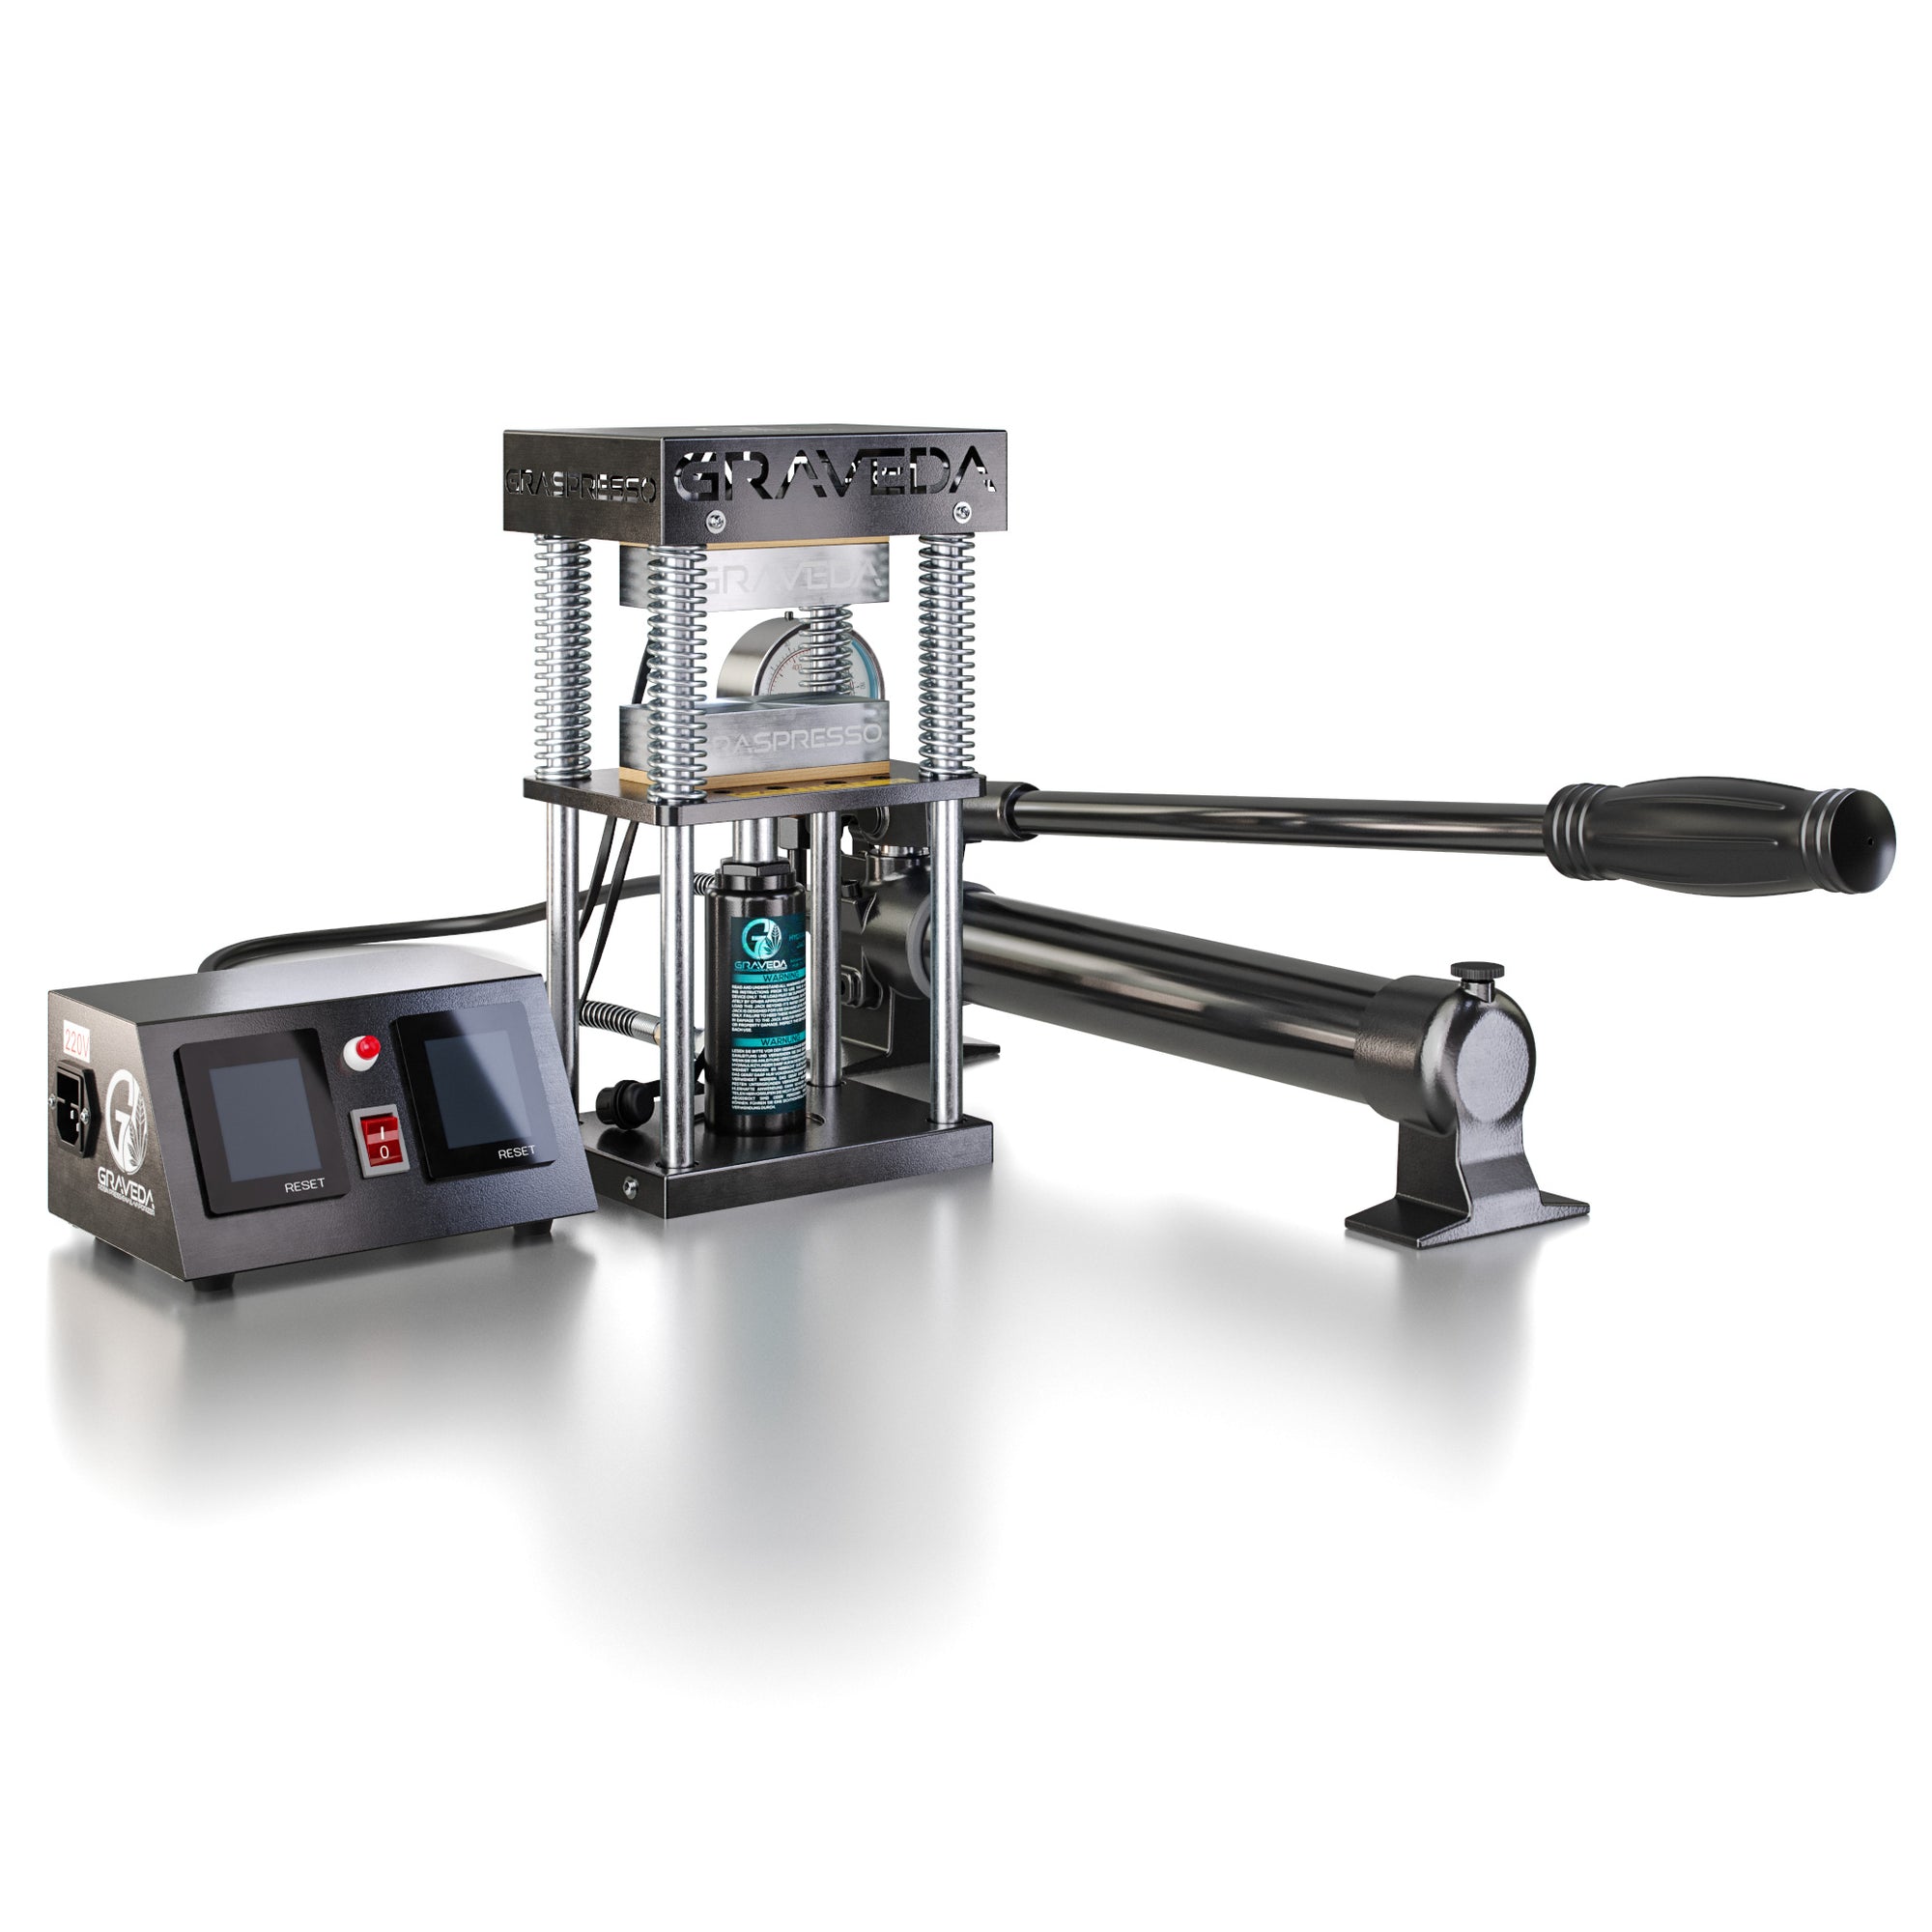 Graveda Graspresso EPIC 15 Ton hydraulic cylinder and manomete Rosin press